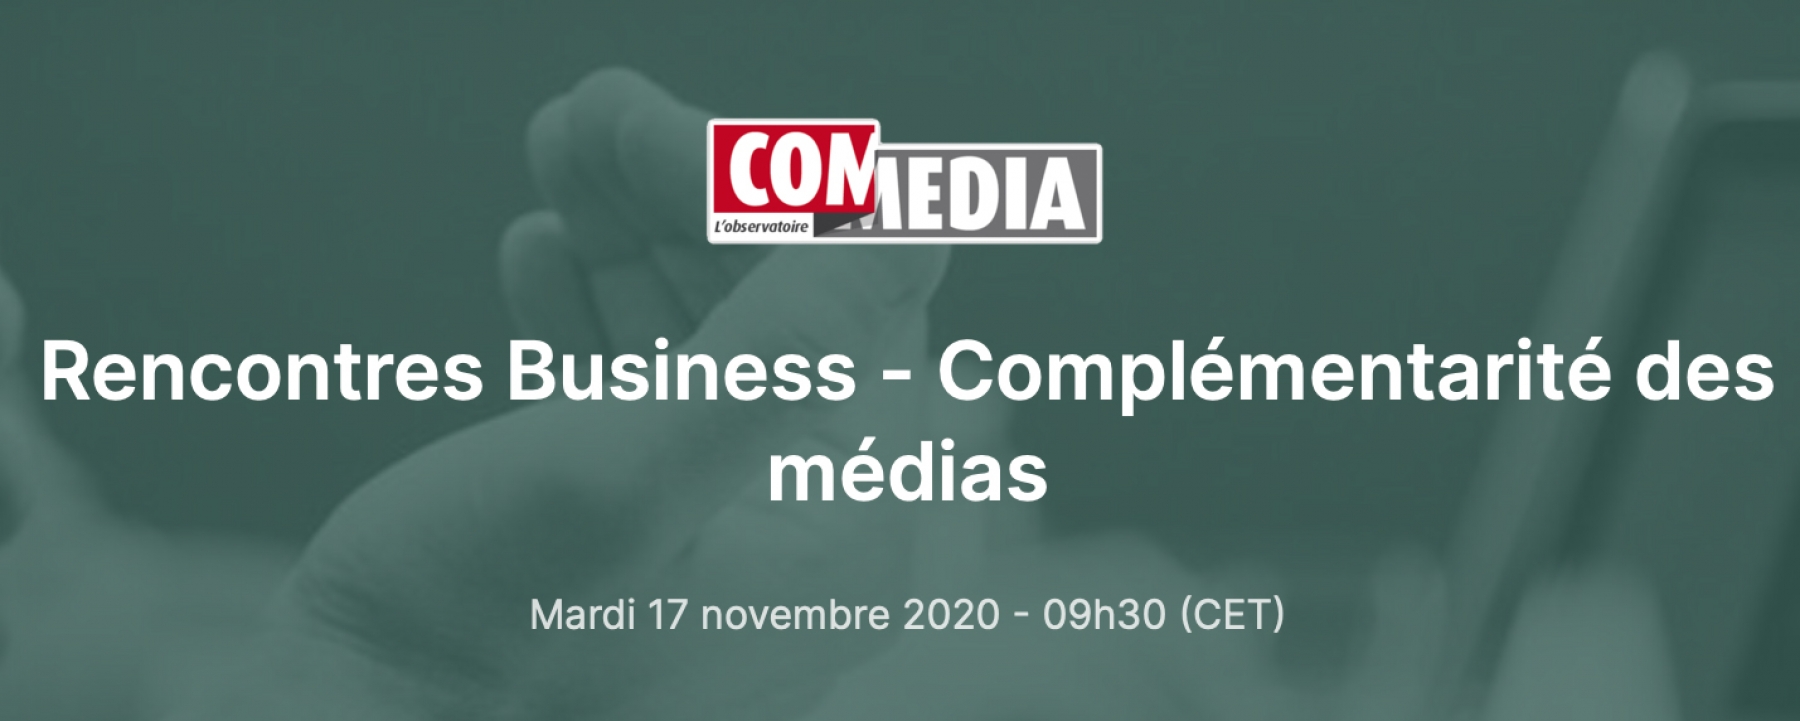 Rencontres Business - Complémentarité des médias